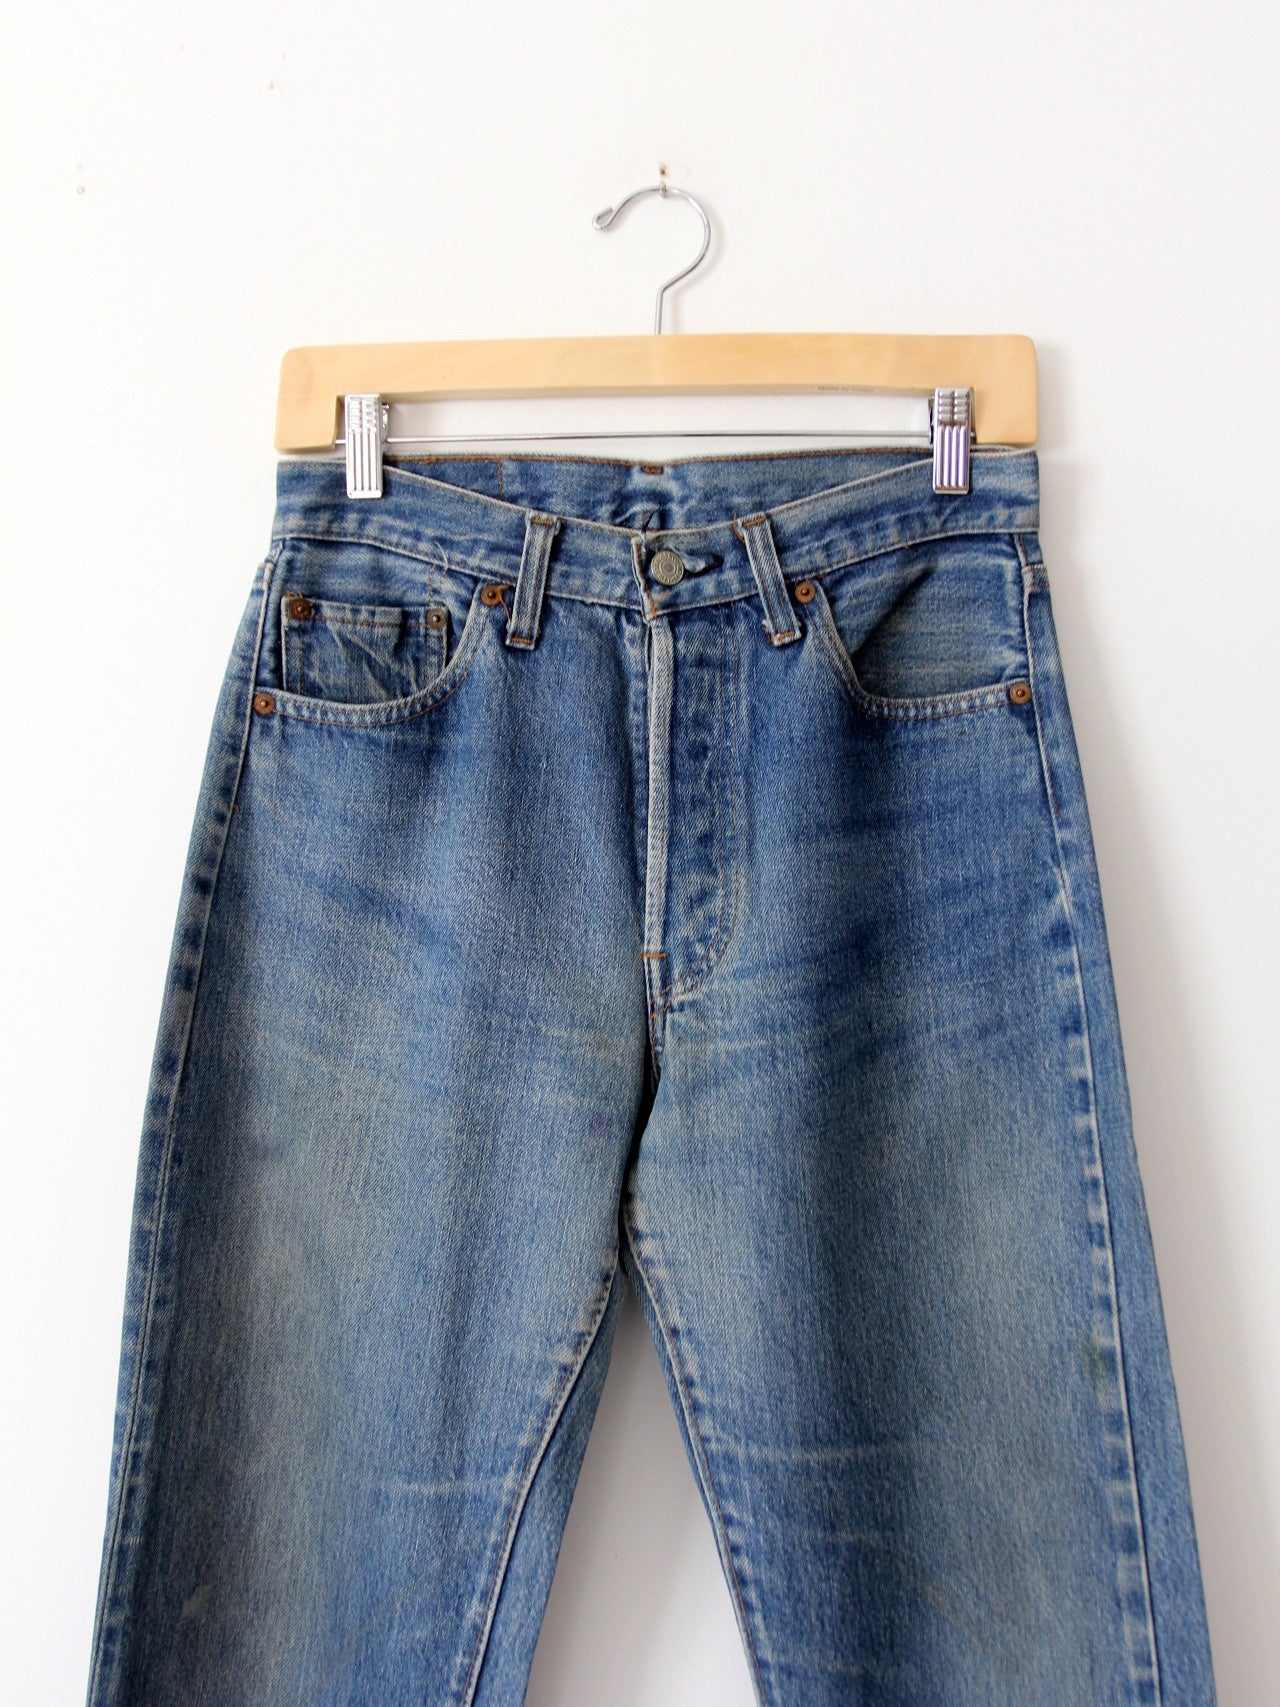 Levi's 501 line selvedge jeans, x 31 – 86 Vintage